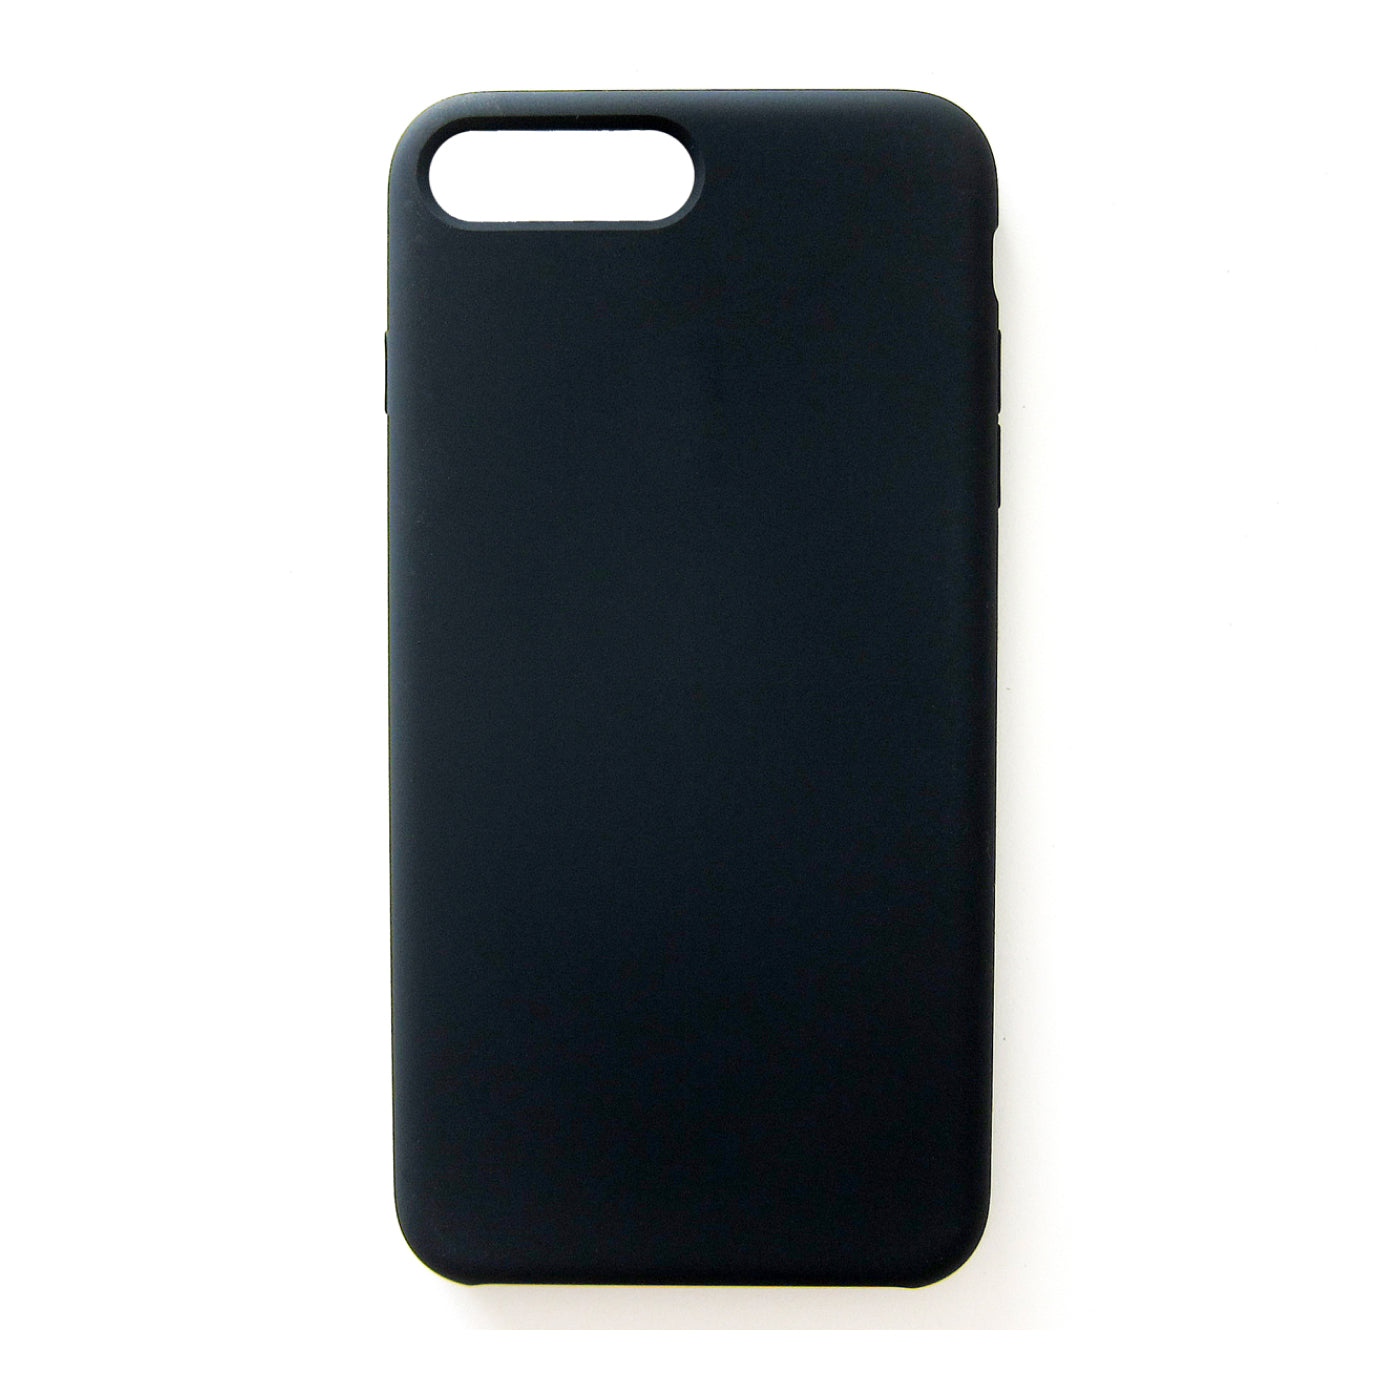 Liquid Phone Case - Black - Apple iPhone 8 Plus Black New - Sealed